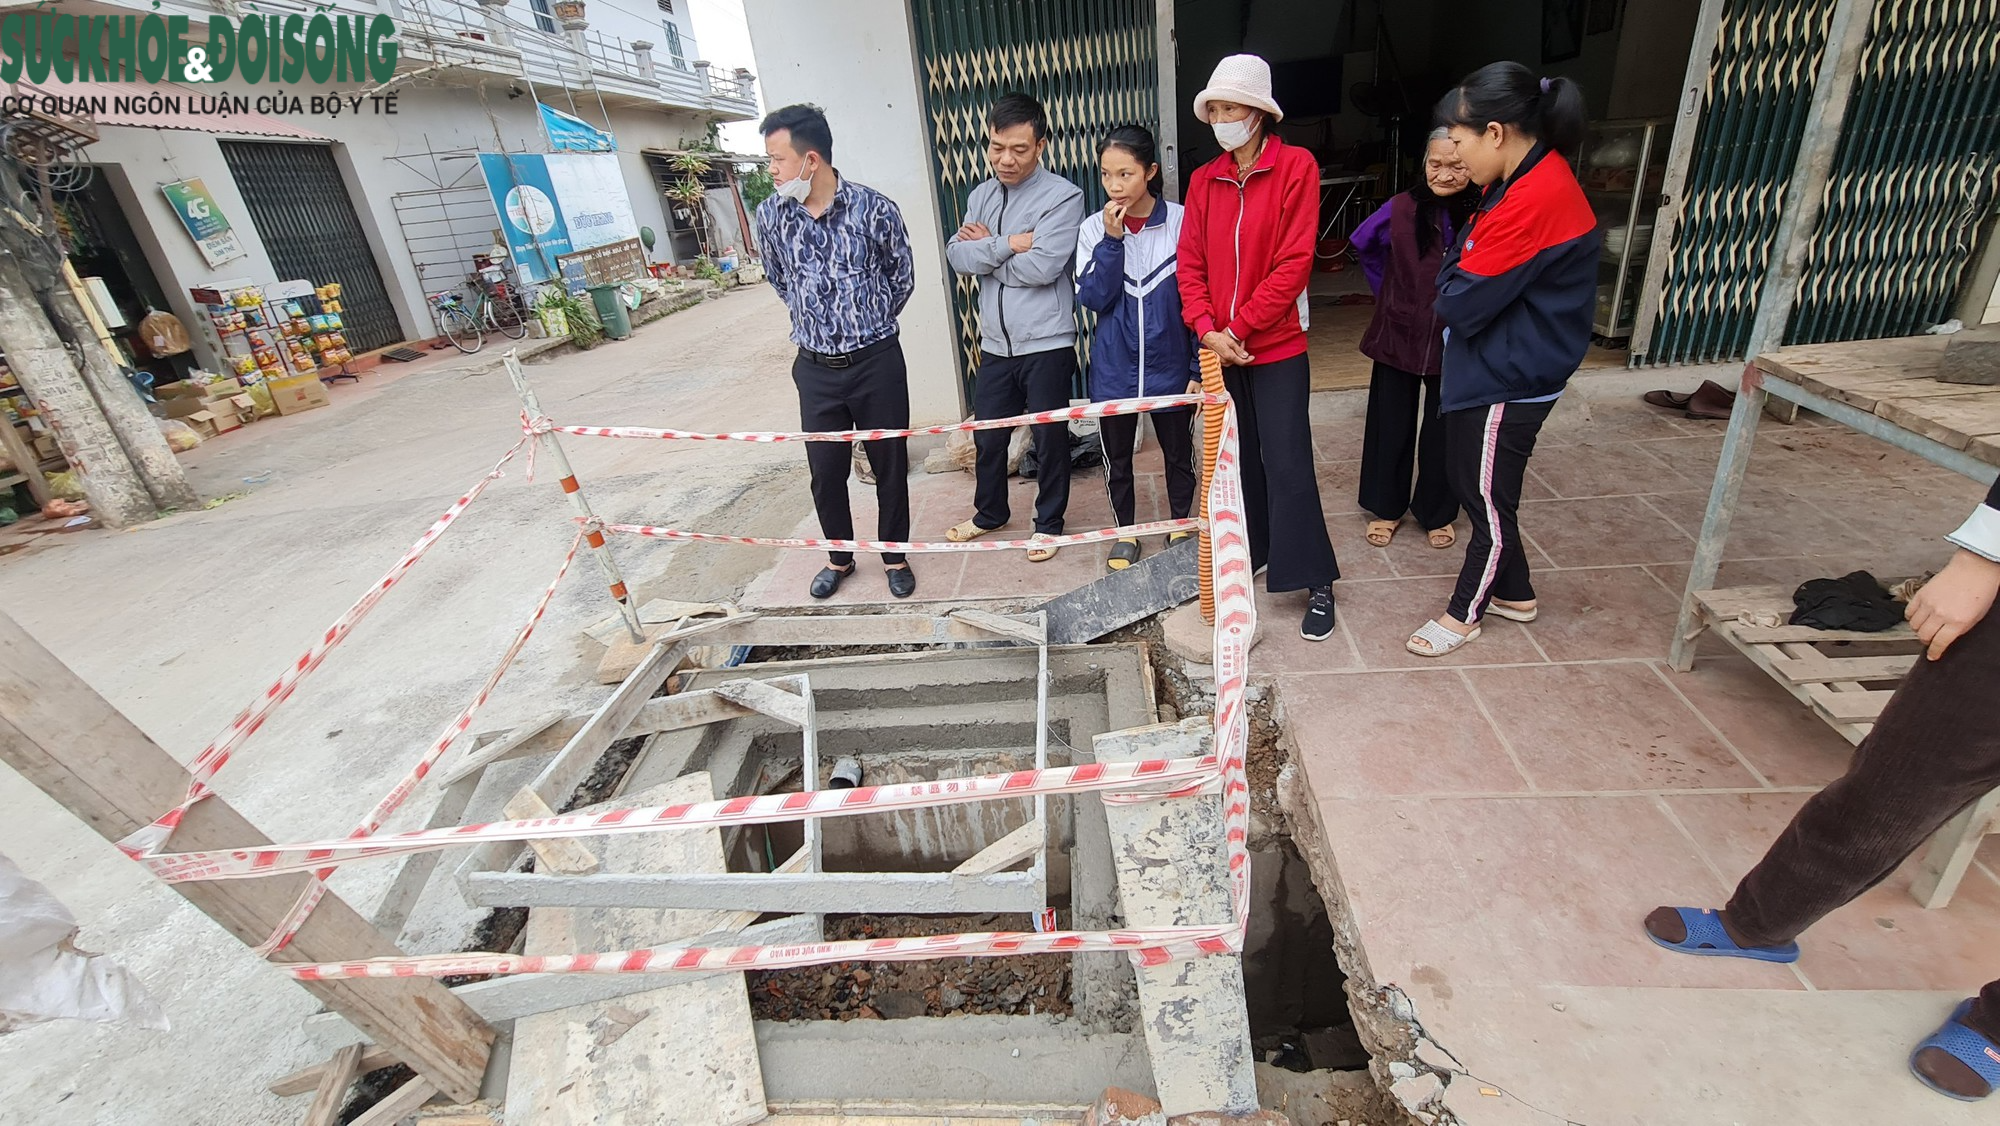 Hiện trường vụ bé gái 3 tuổi rơi xuống cống thoát nước ở Bắc Giang - Ảnh 7.